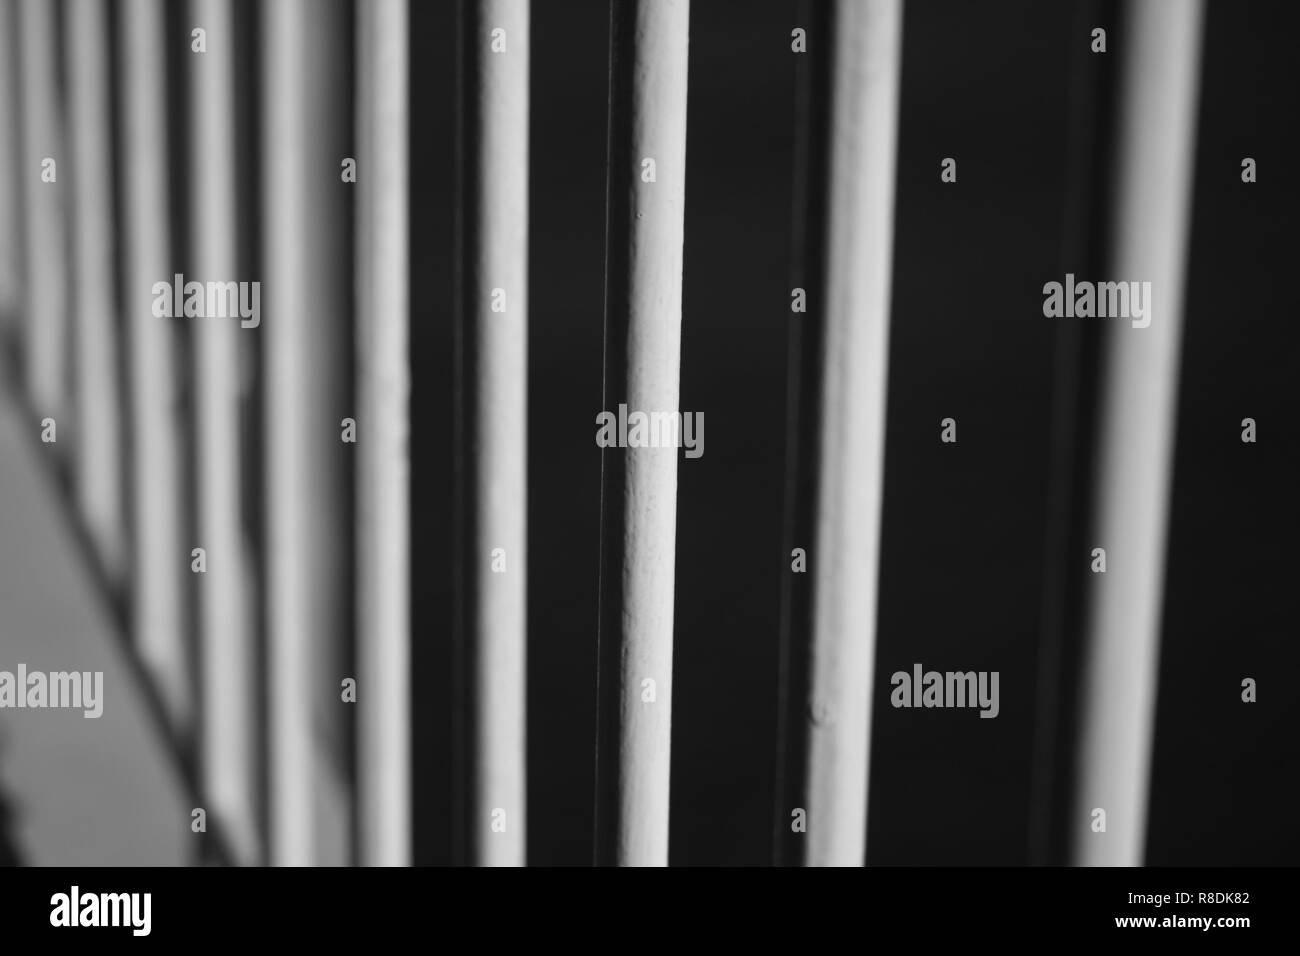 Imagen abstracta de las barras verticales en blanco y negro fotográfico monocromo Foto de stock